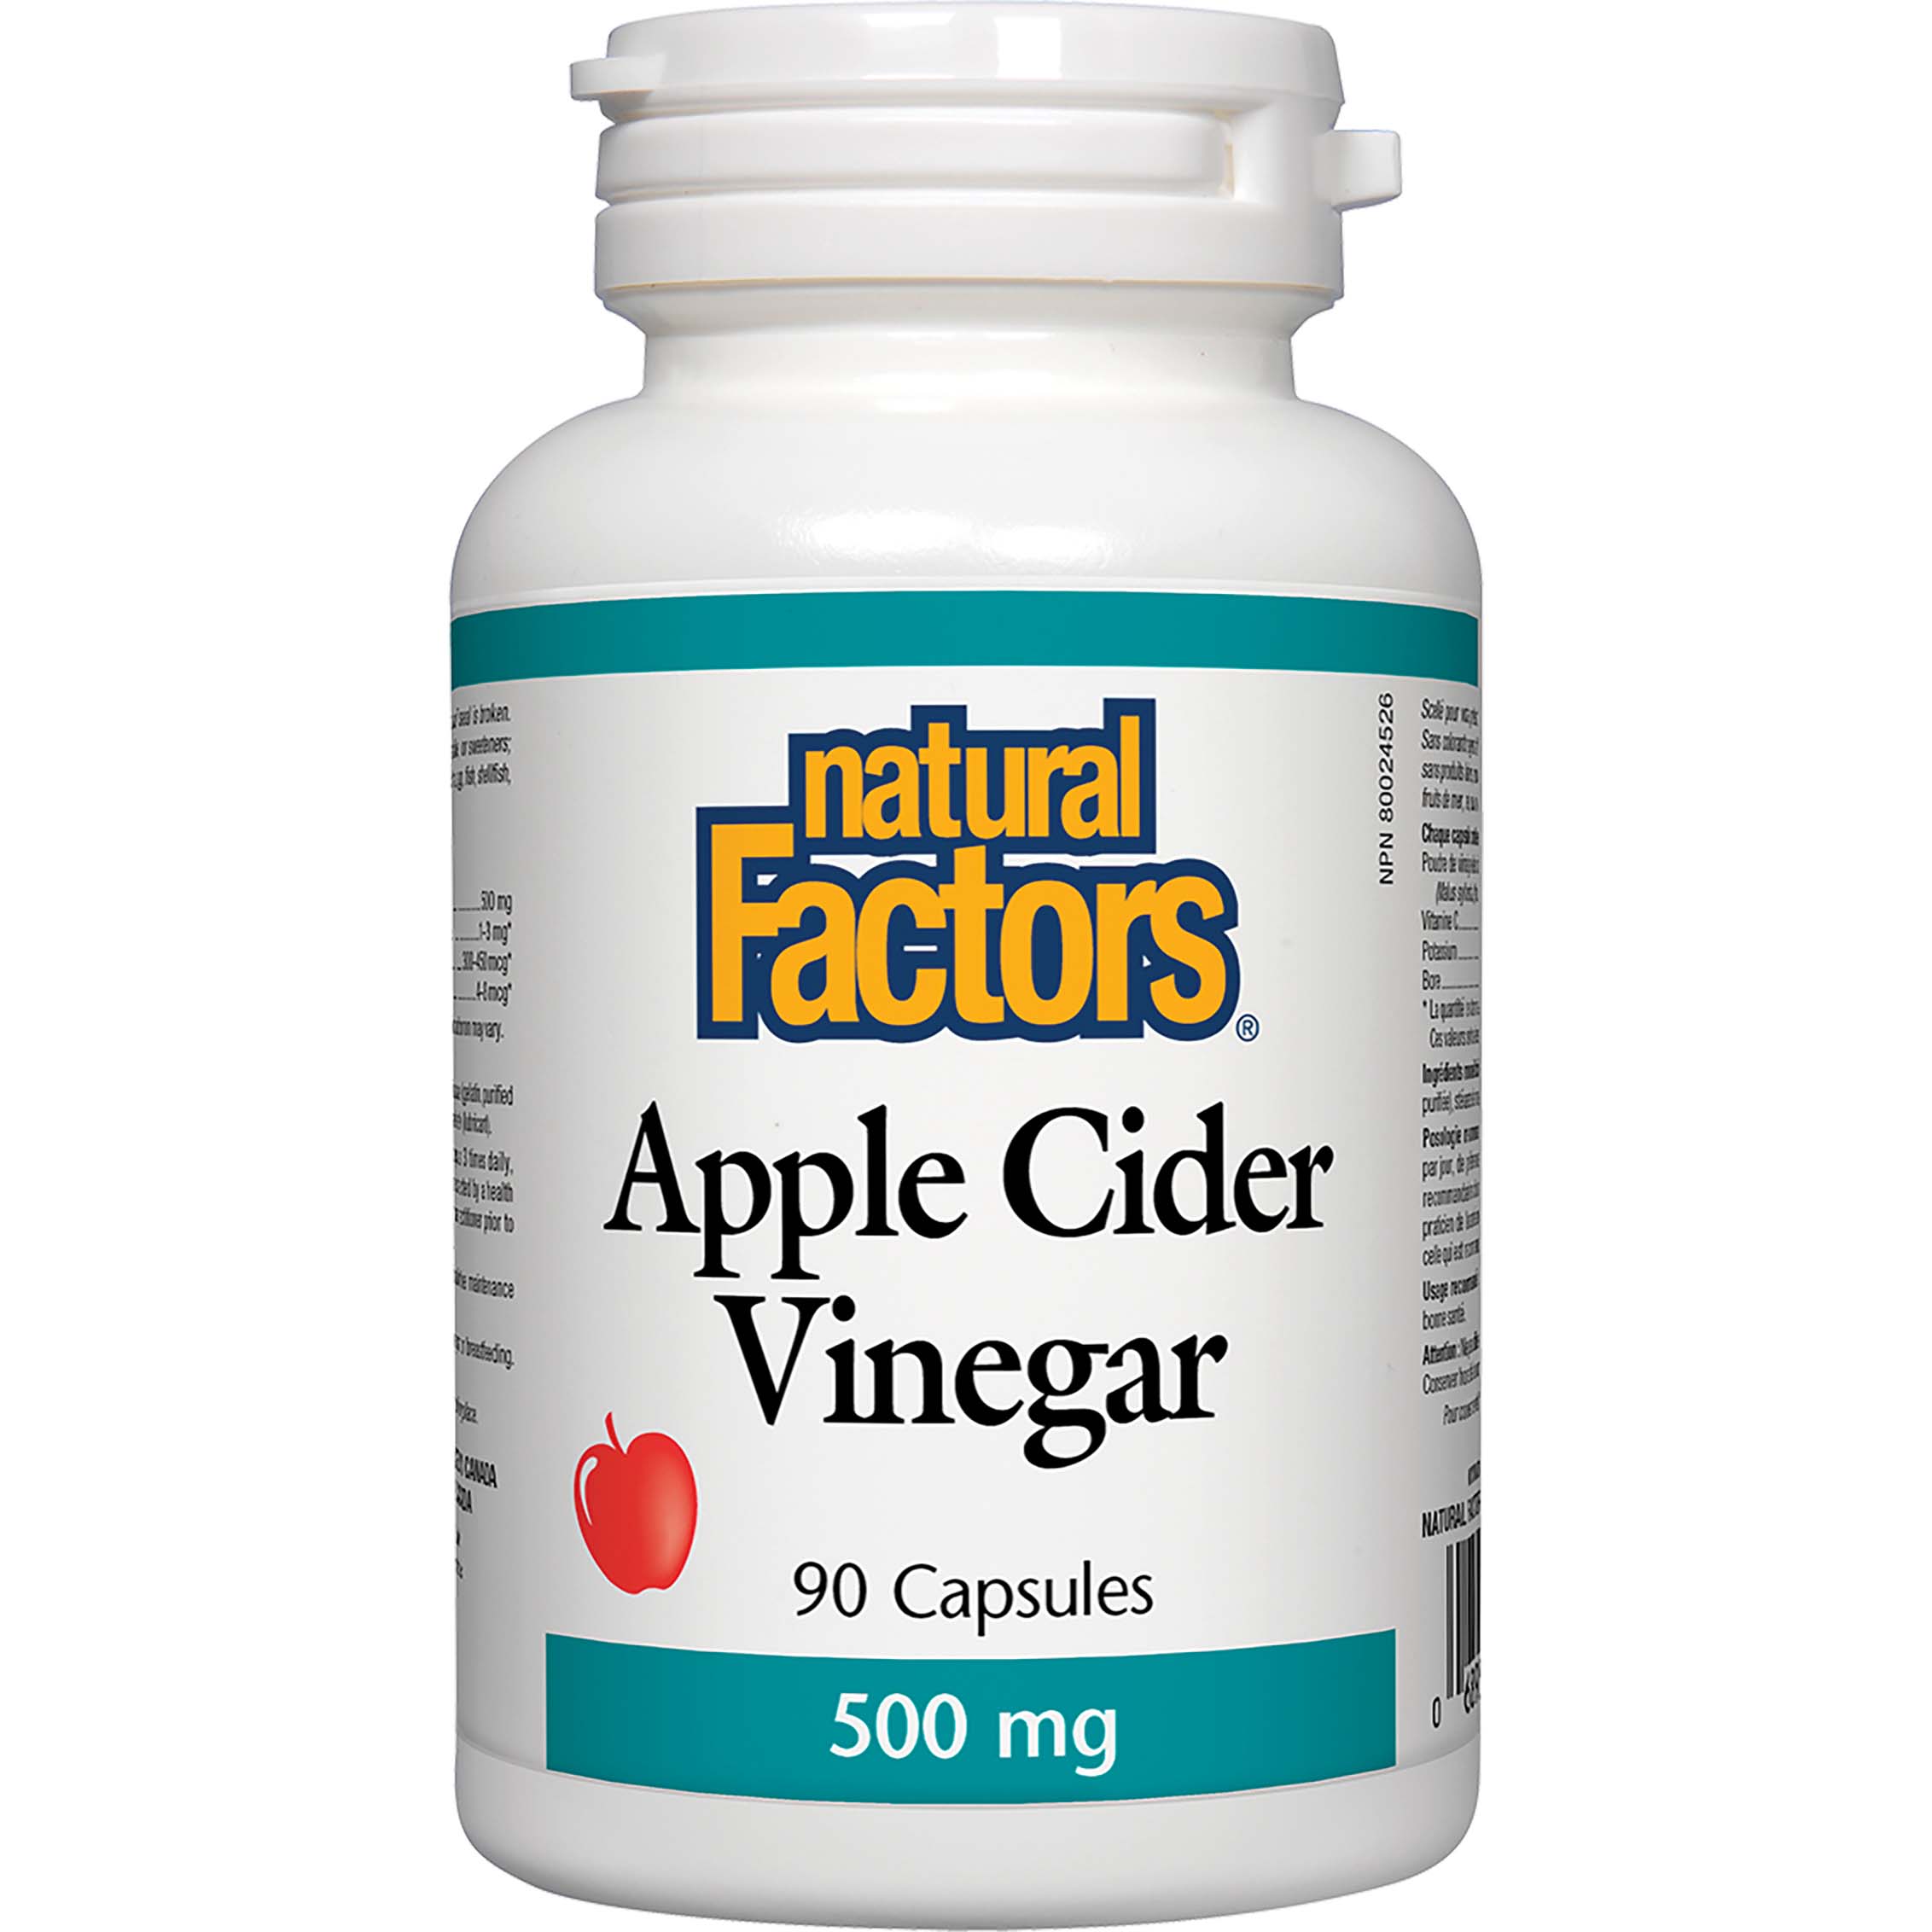 Natural Factors Apple Cider Vinegar 90 Capsules 500 mg